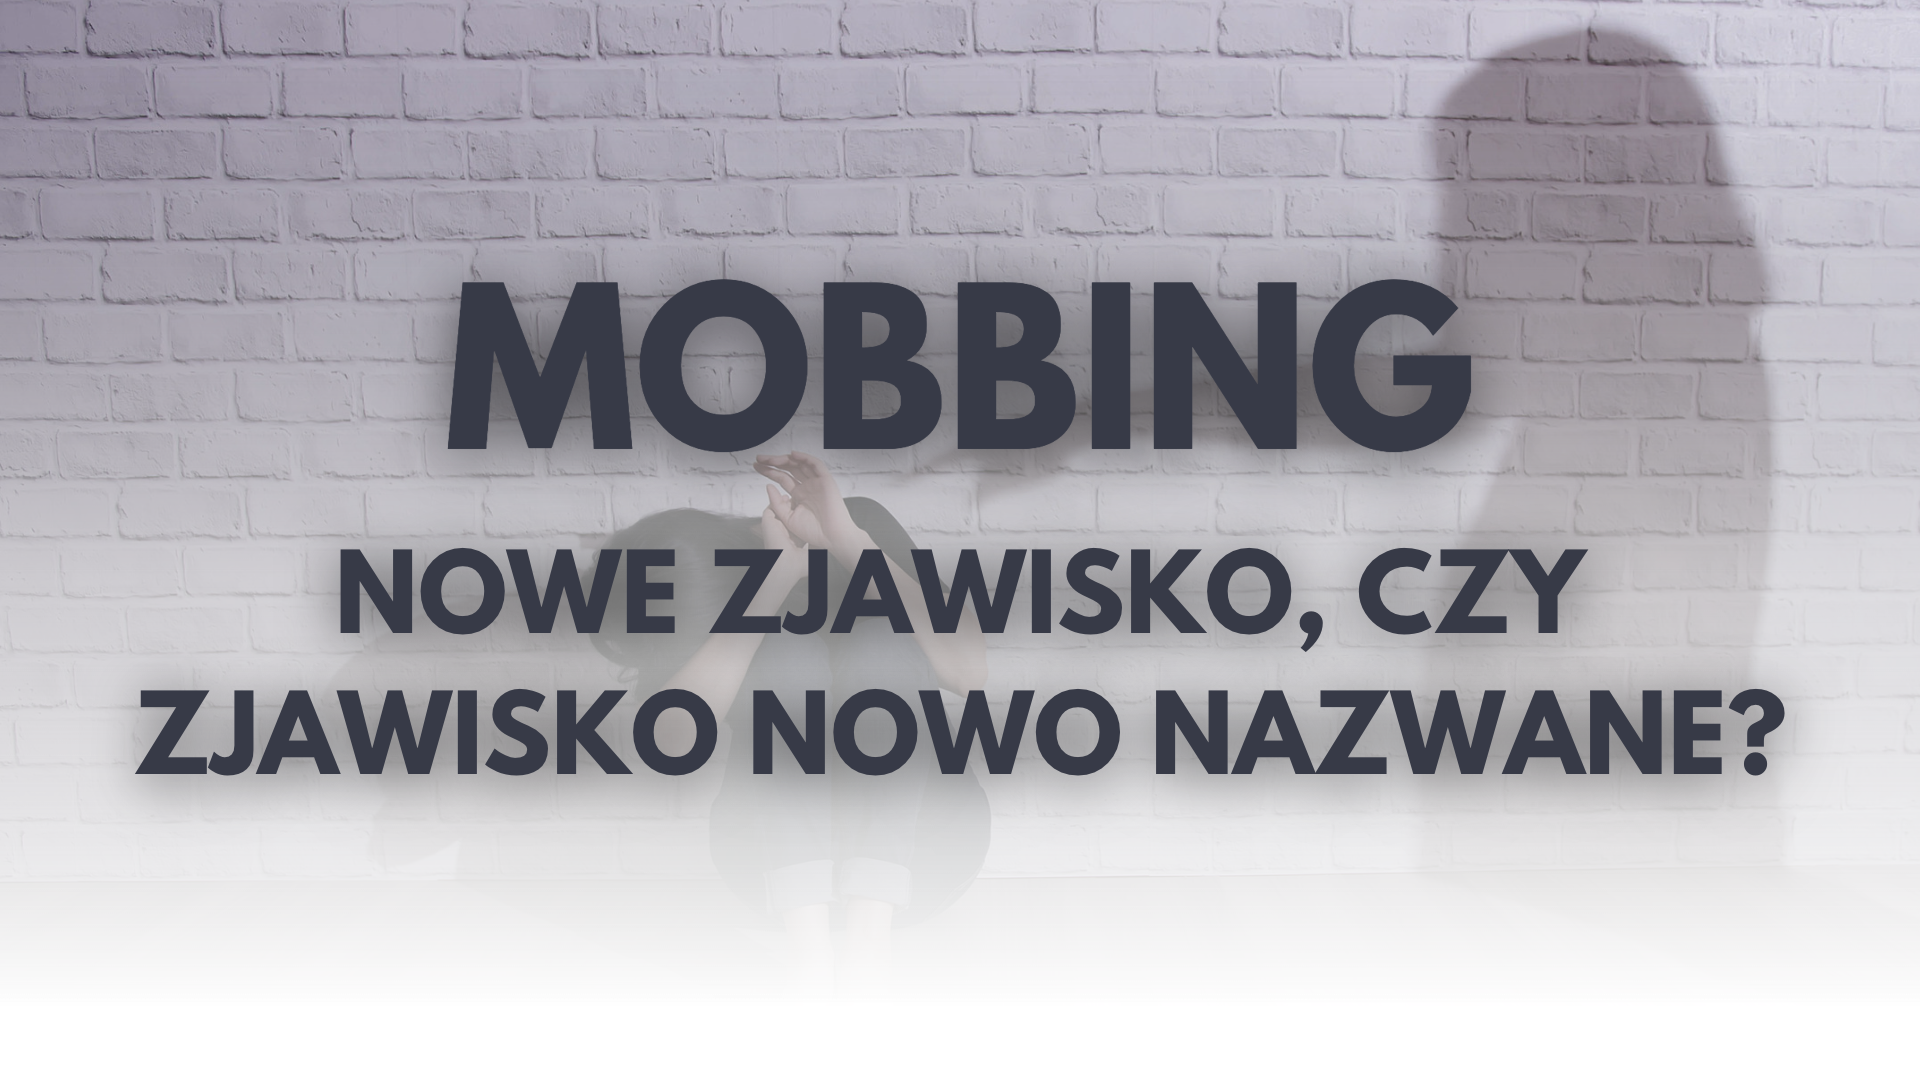 Mobbing- nowe zjawisko czy zjawisko nowo nazwane?